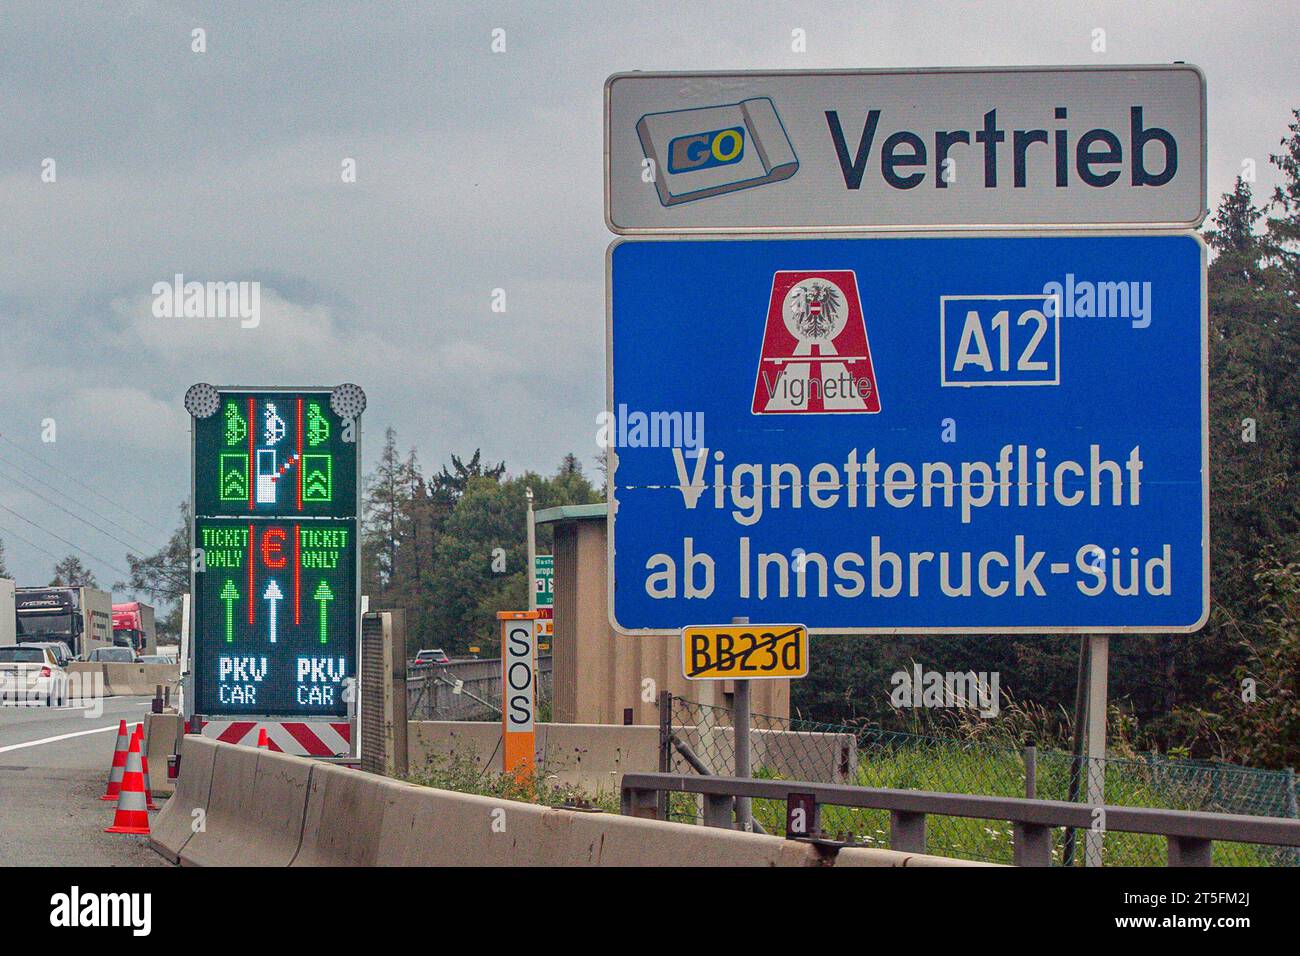 Die Brenner Autobahn A 13 ist eine Autobahn in Tirol und Teil der Europastraße 45. Sie bilden den österreichischen Teil der Brennerautobahn. Autobahn 13 *** die Brennerautobahn A 13 ist eine Autobahn in Tirol und Teil der europäischen Route 45 Sie bildet den österreichischen Teil der Brennerautobahn 13 Credit: Imago/Alamy Live News Stockfoto